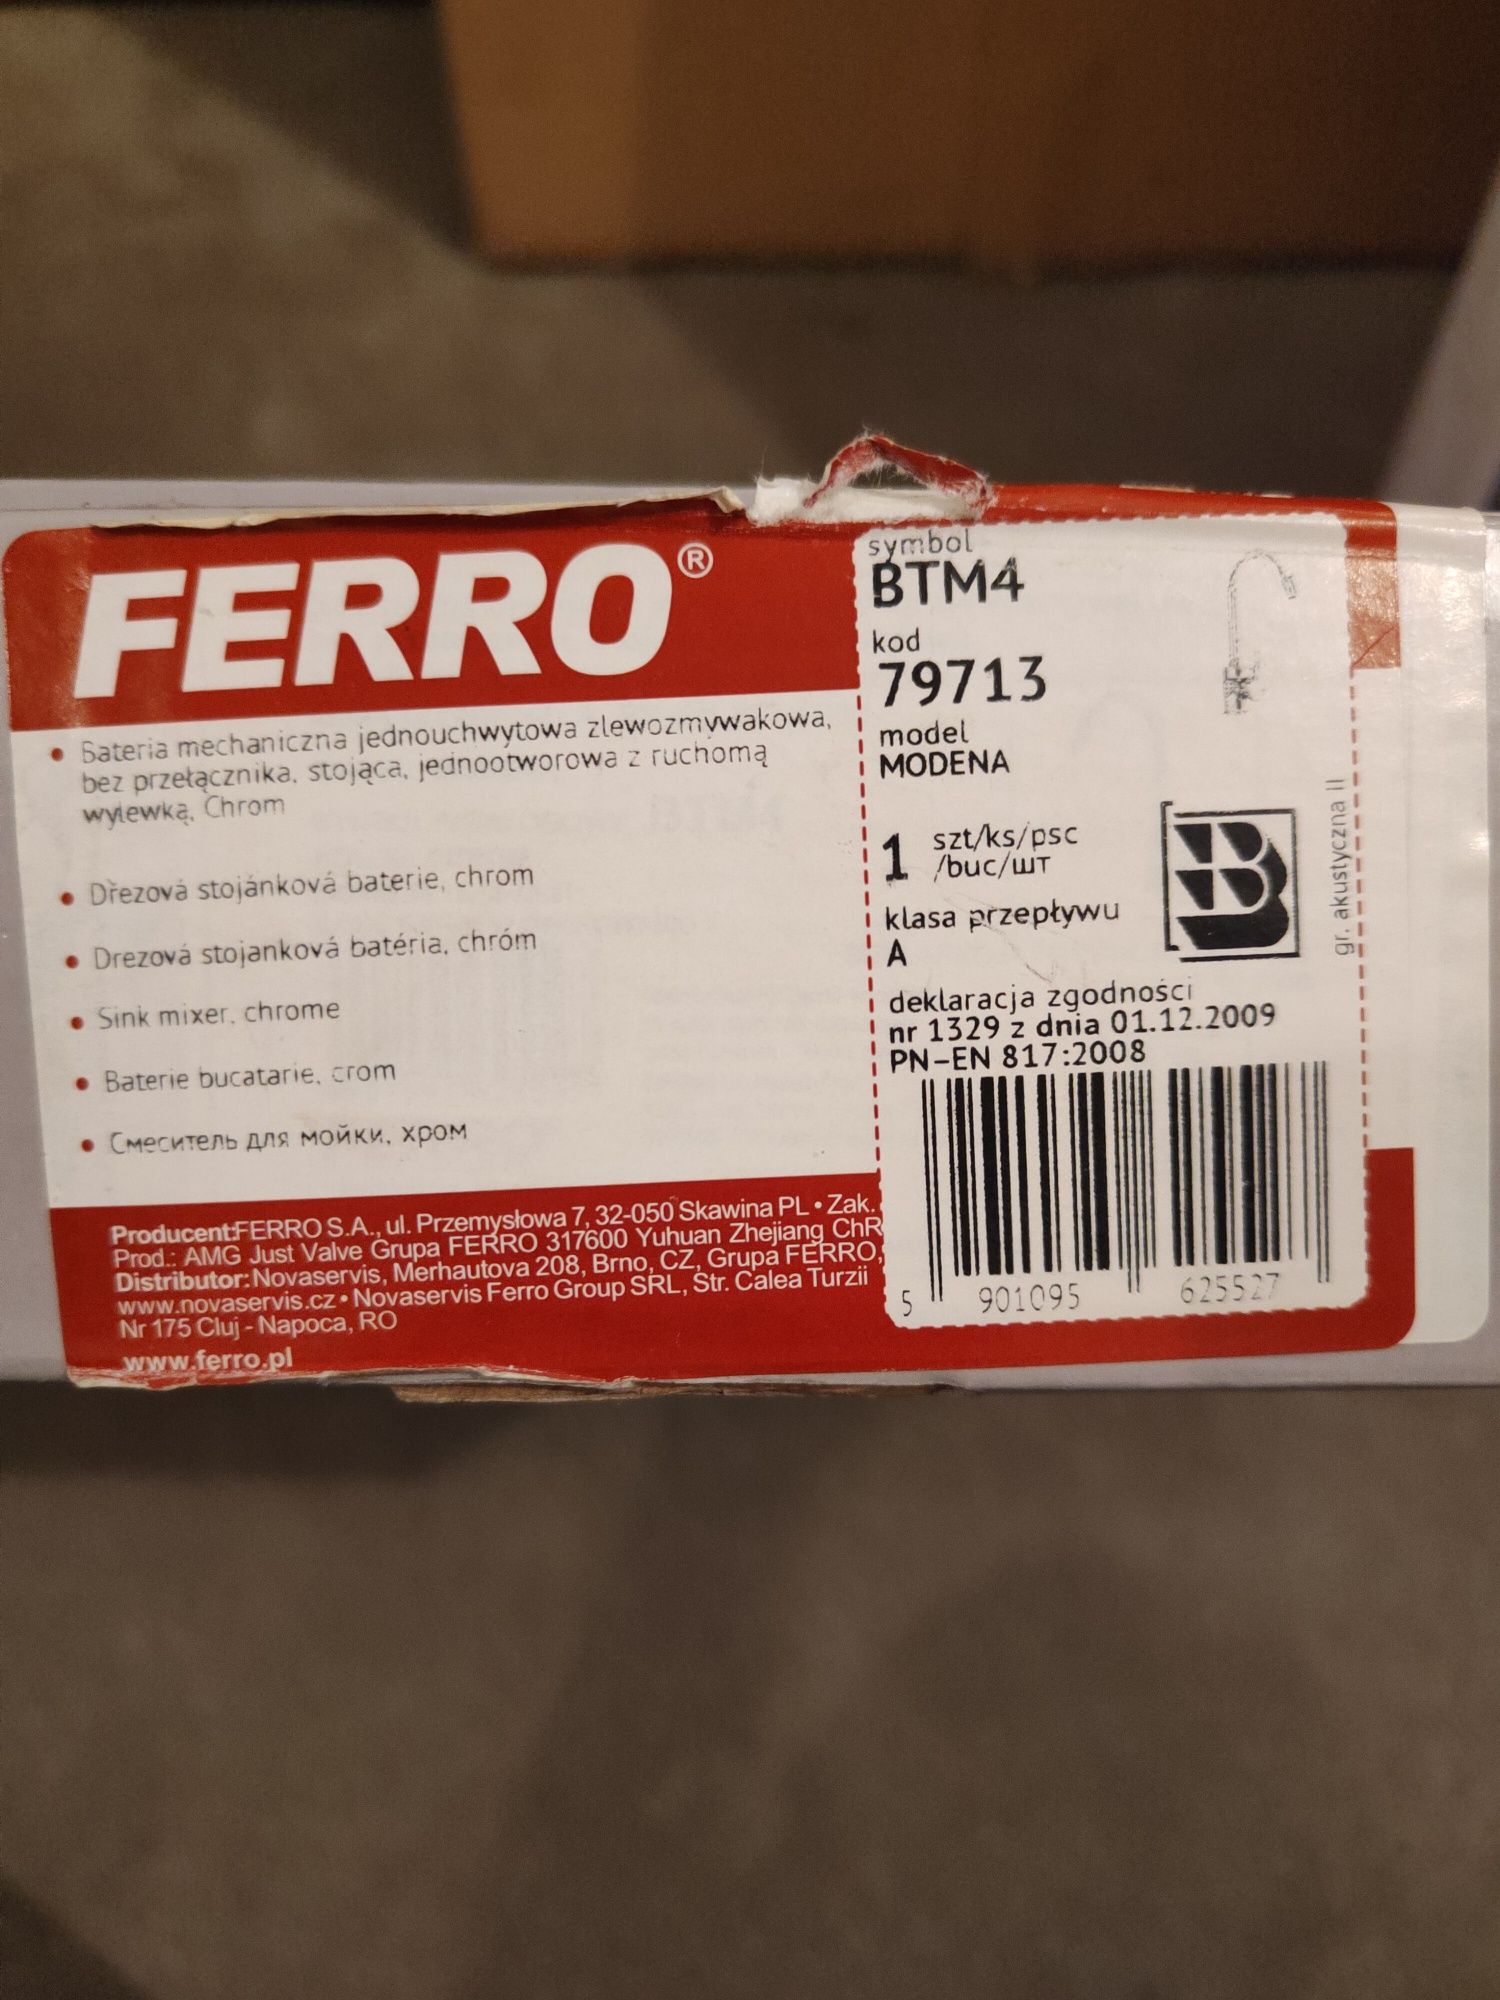 FERRO Modena Bateria kuchenna stojąca jednouchwytowa BTM4